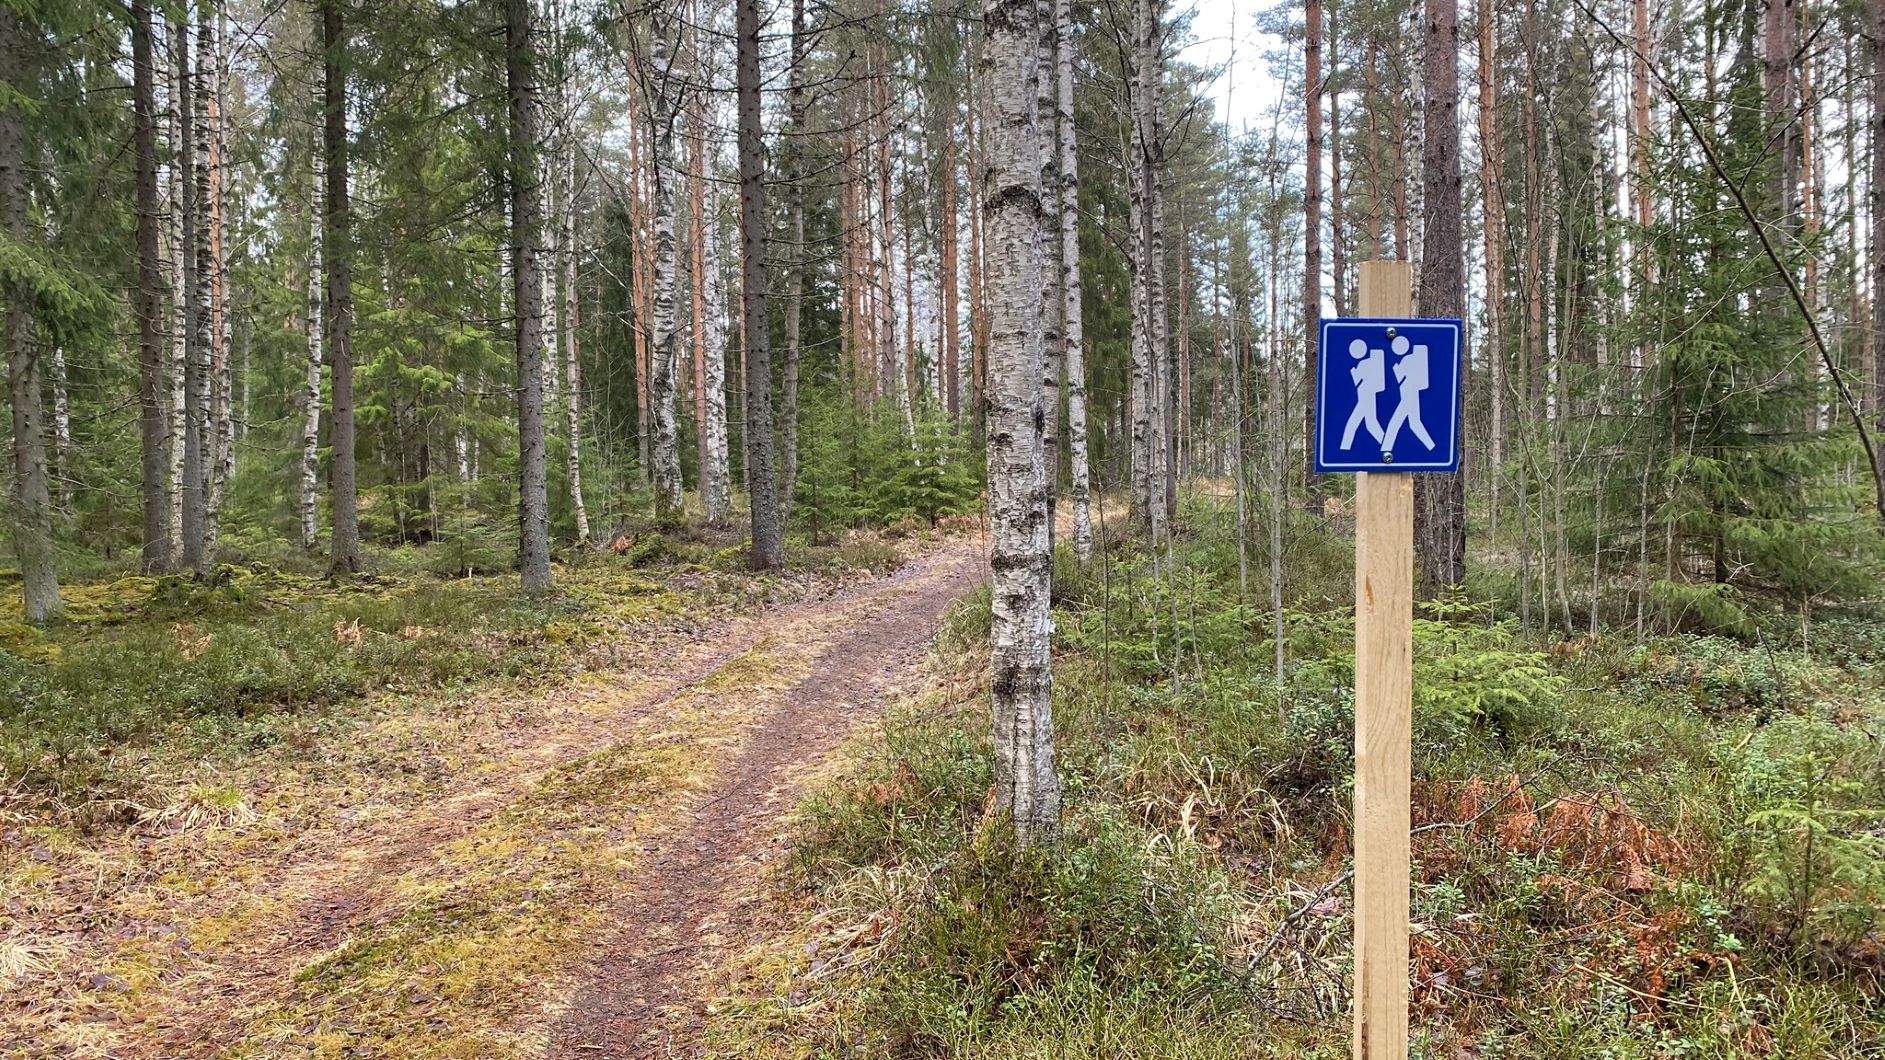 Hovimäki-Esakallio trail